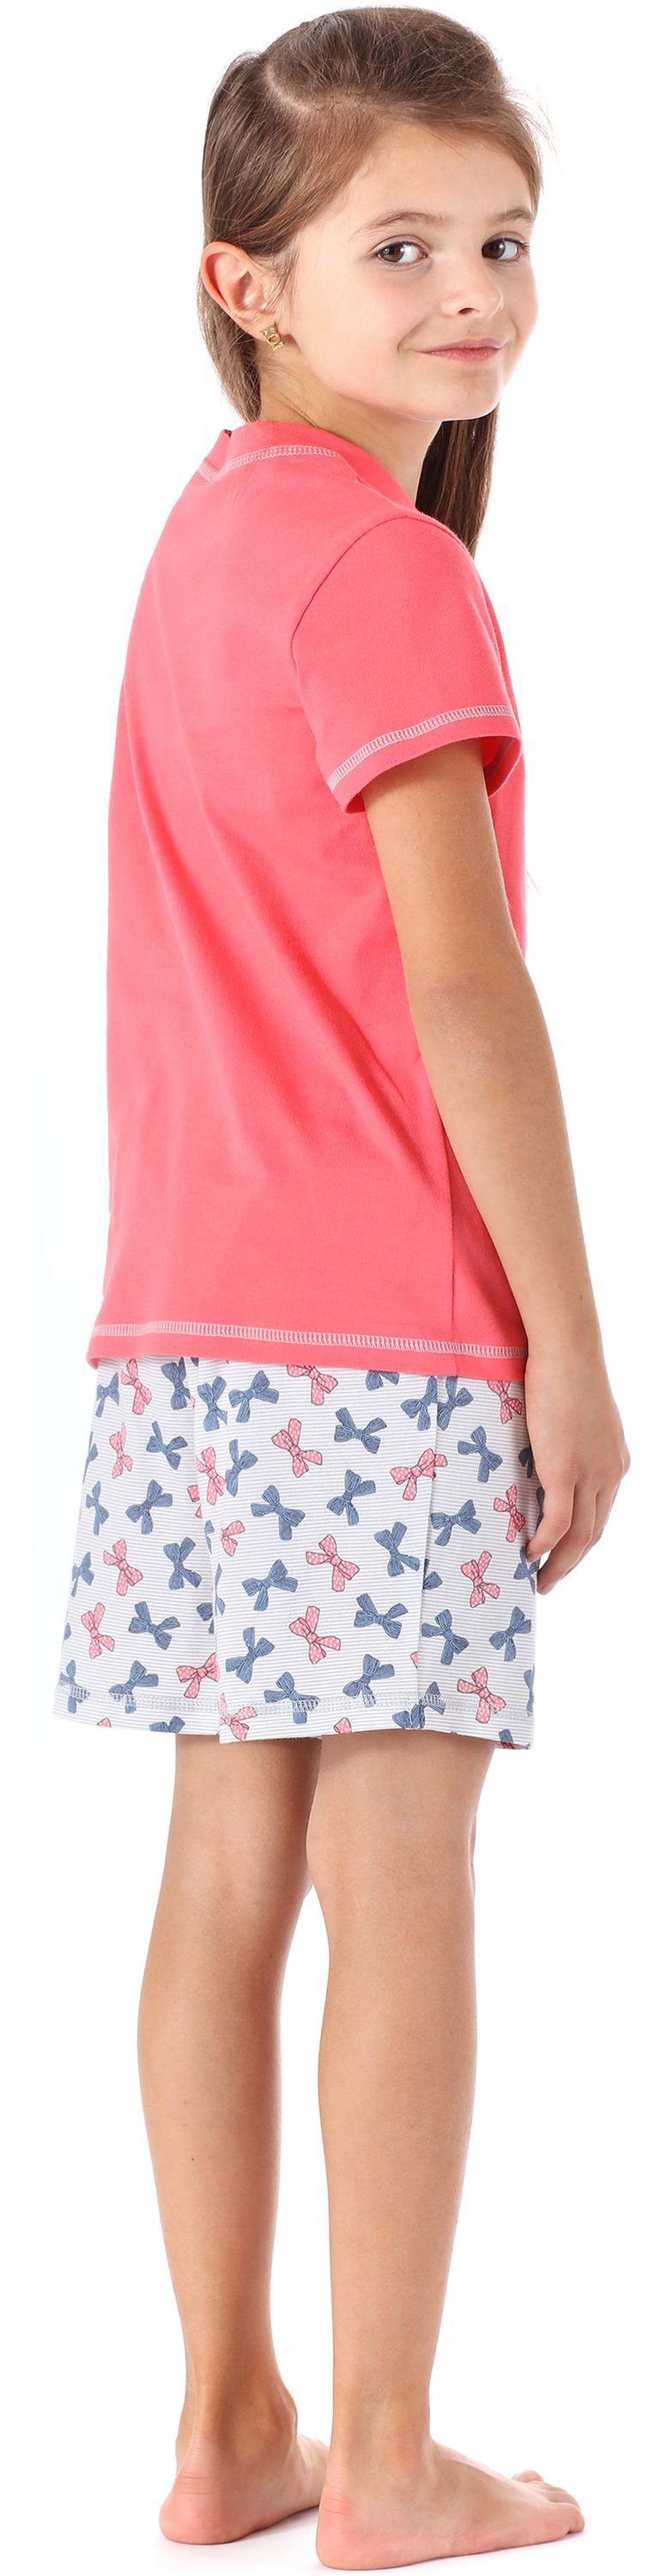 Merry Style Schlafanzug Baumwolle Schlafanzüge Korallenrot/Bögen aus Set MS10-292 Kurz Mädchen Pyjama